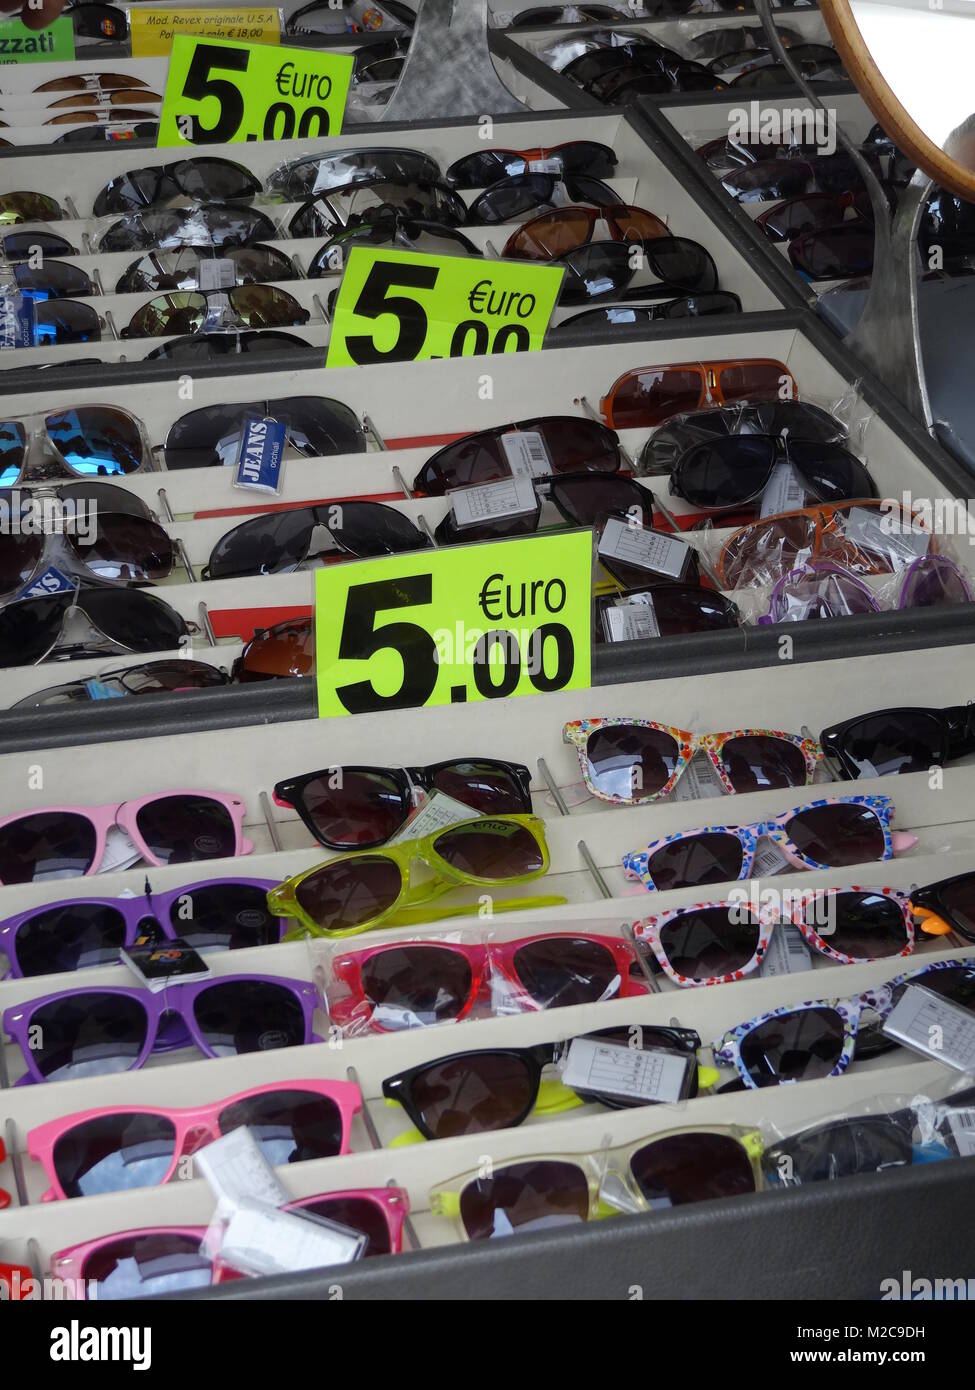 Sonnenbrillen, soweit das Auge reicht - Sonderangebote locken zum Kauf  - Gardasee / Lago di Garda / Italien /Italy / Italia Stock Photo